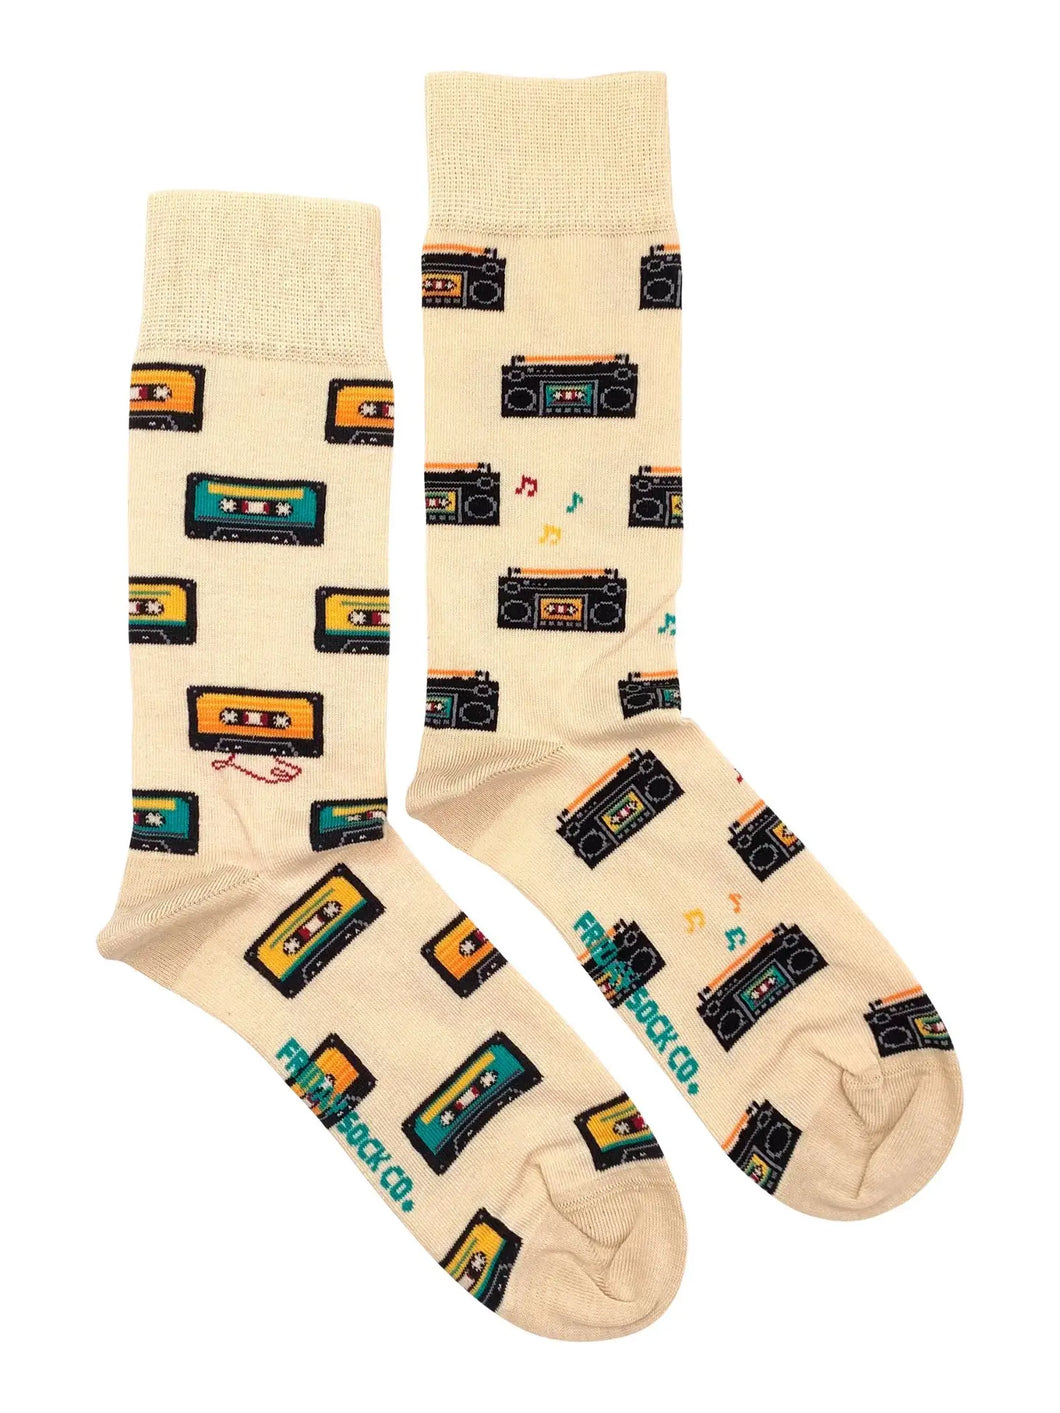 men's socks - cassette & boom box